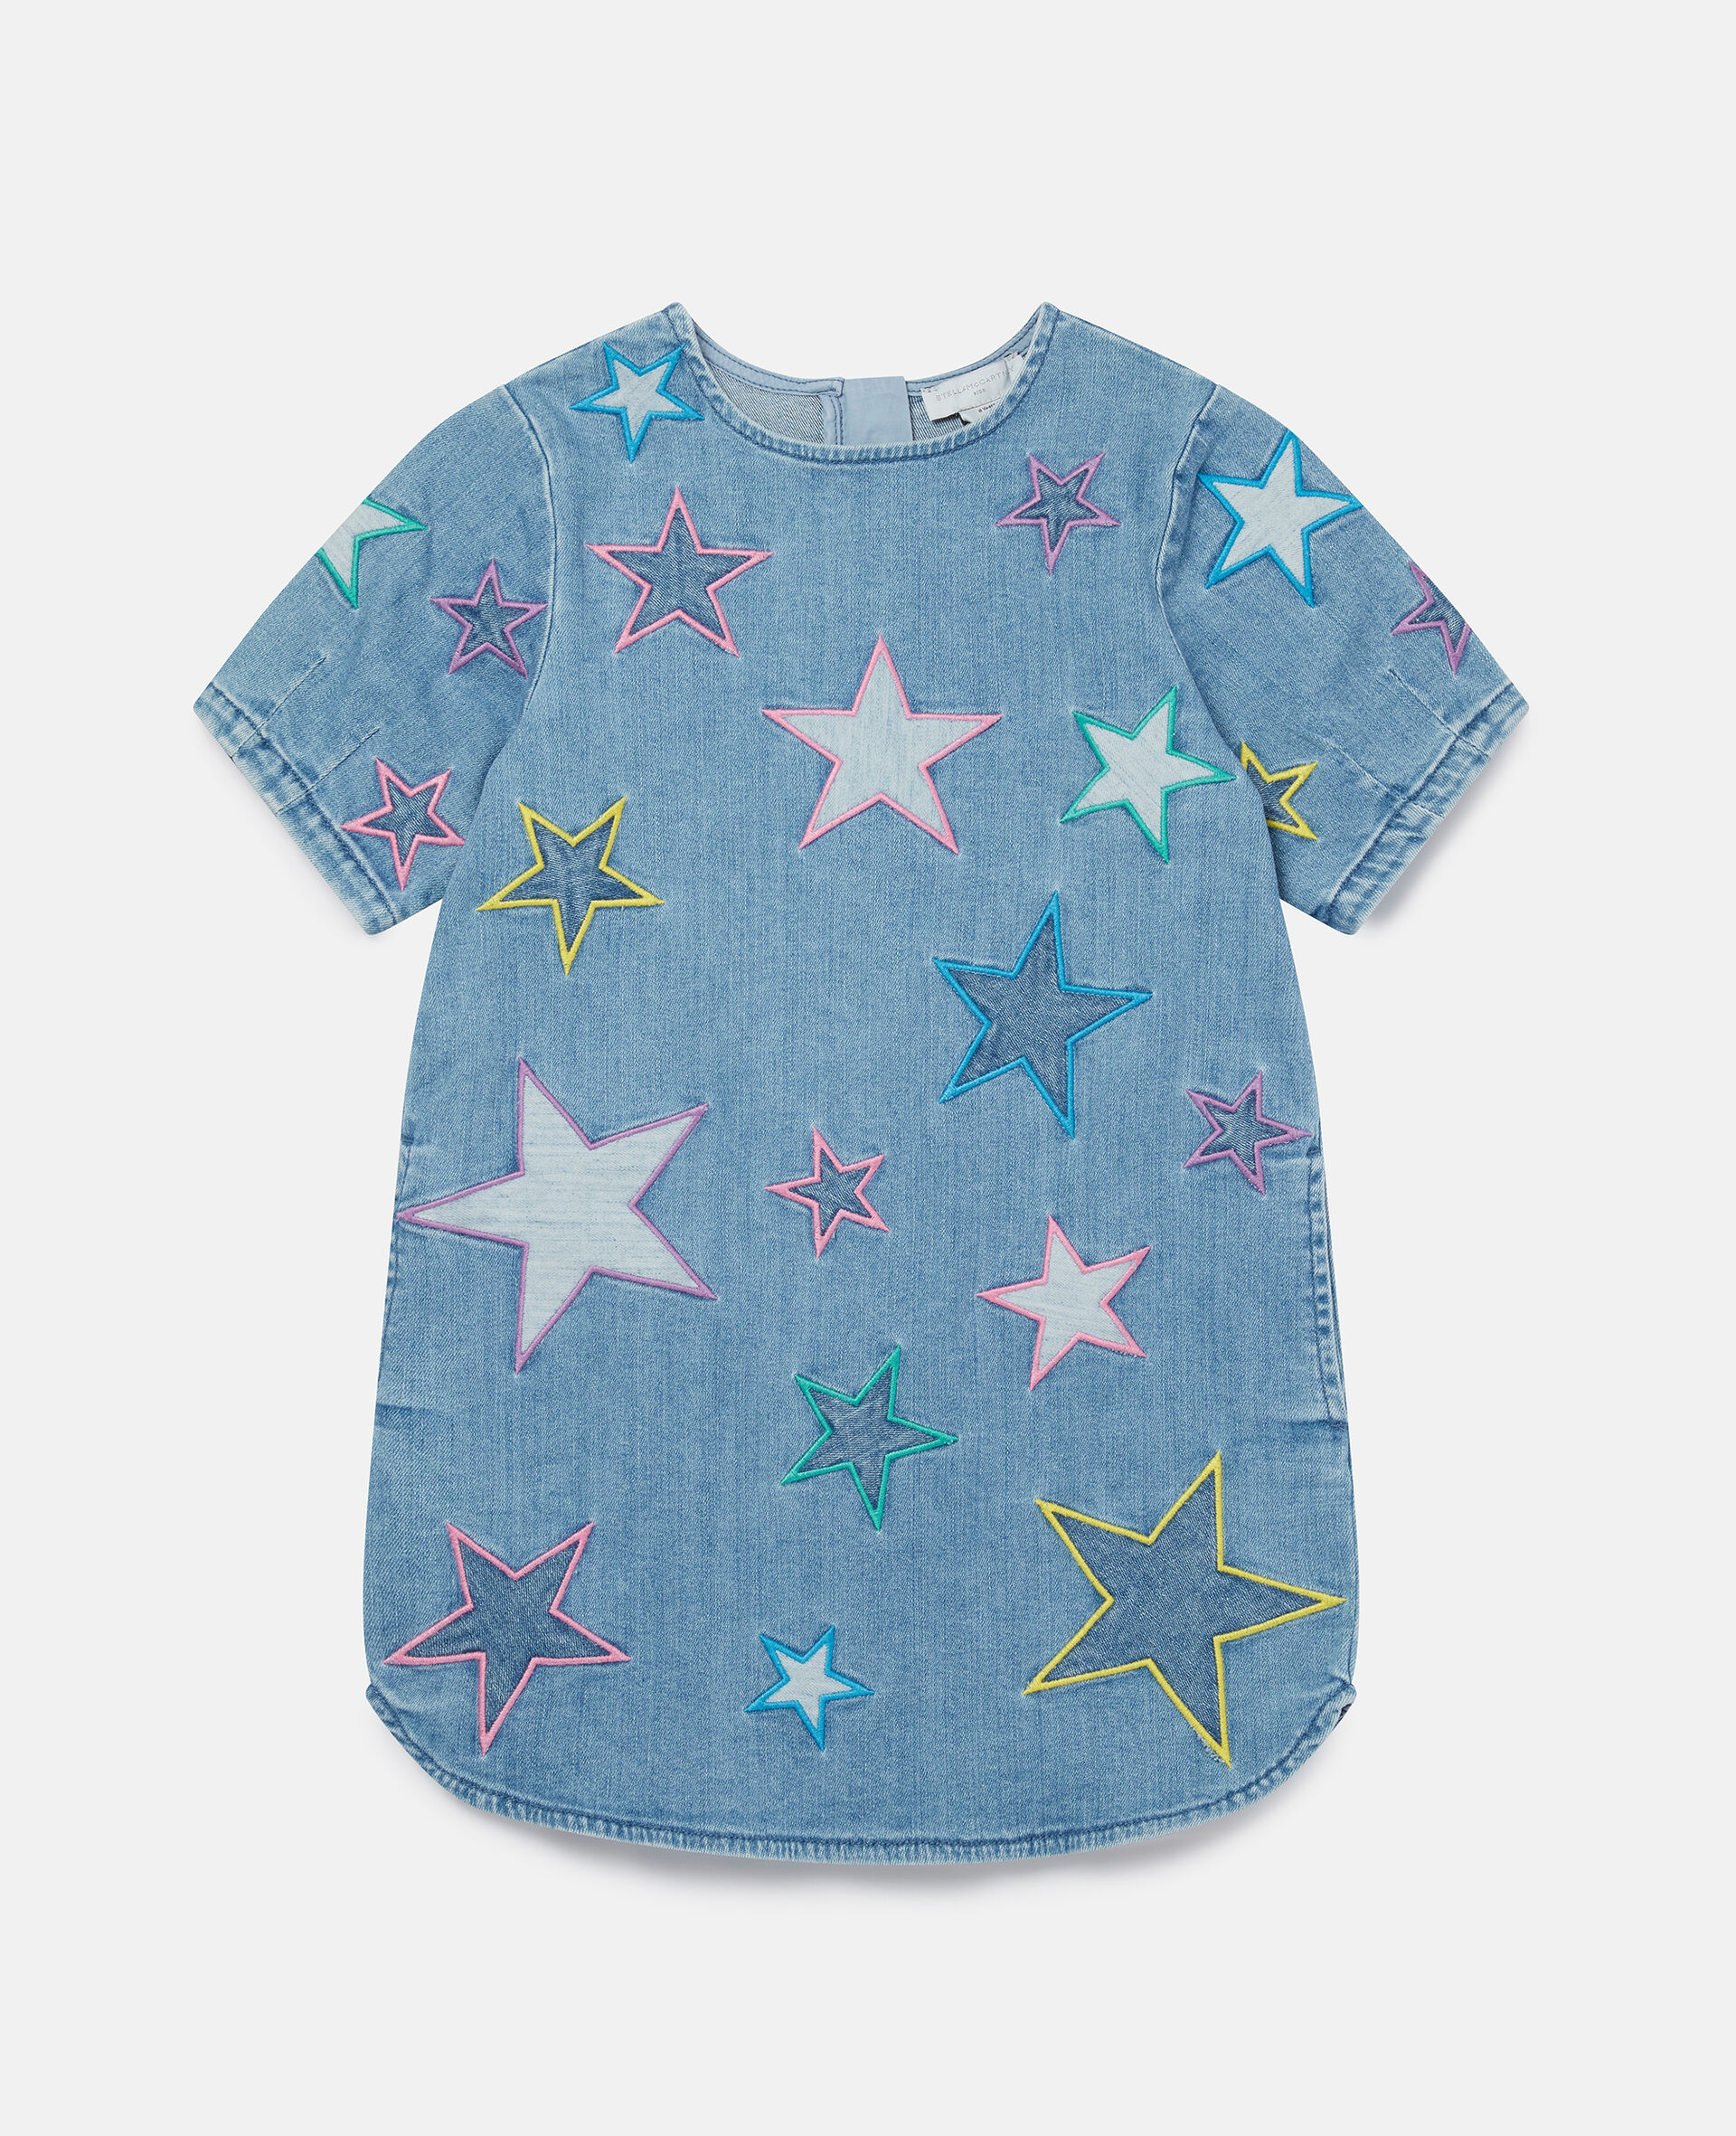 Embroidered Star Denim Dress-Blue-large